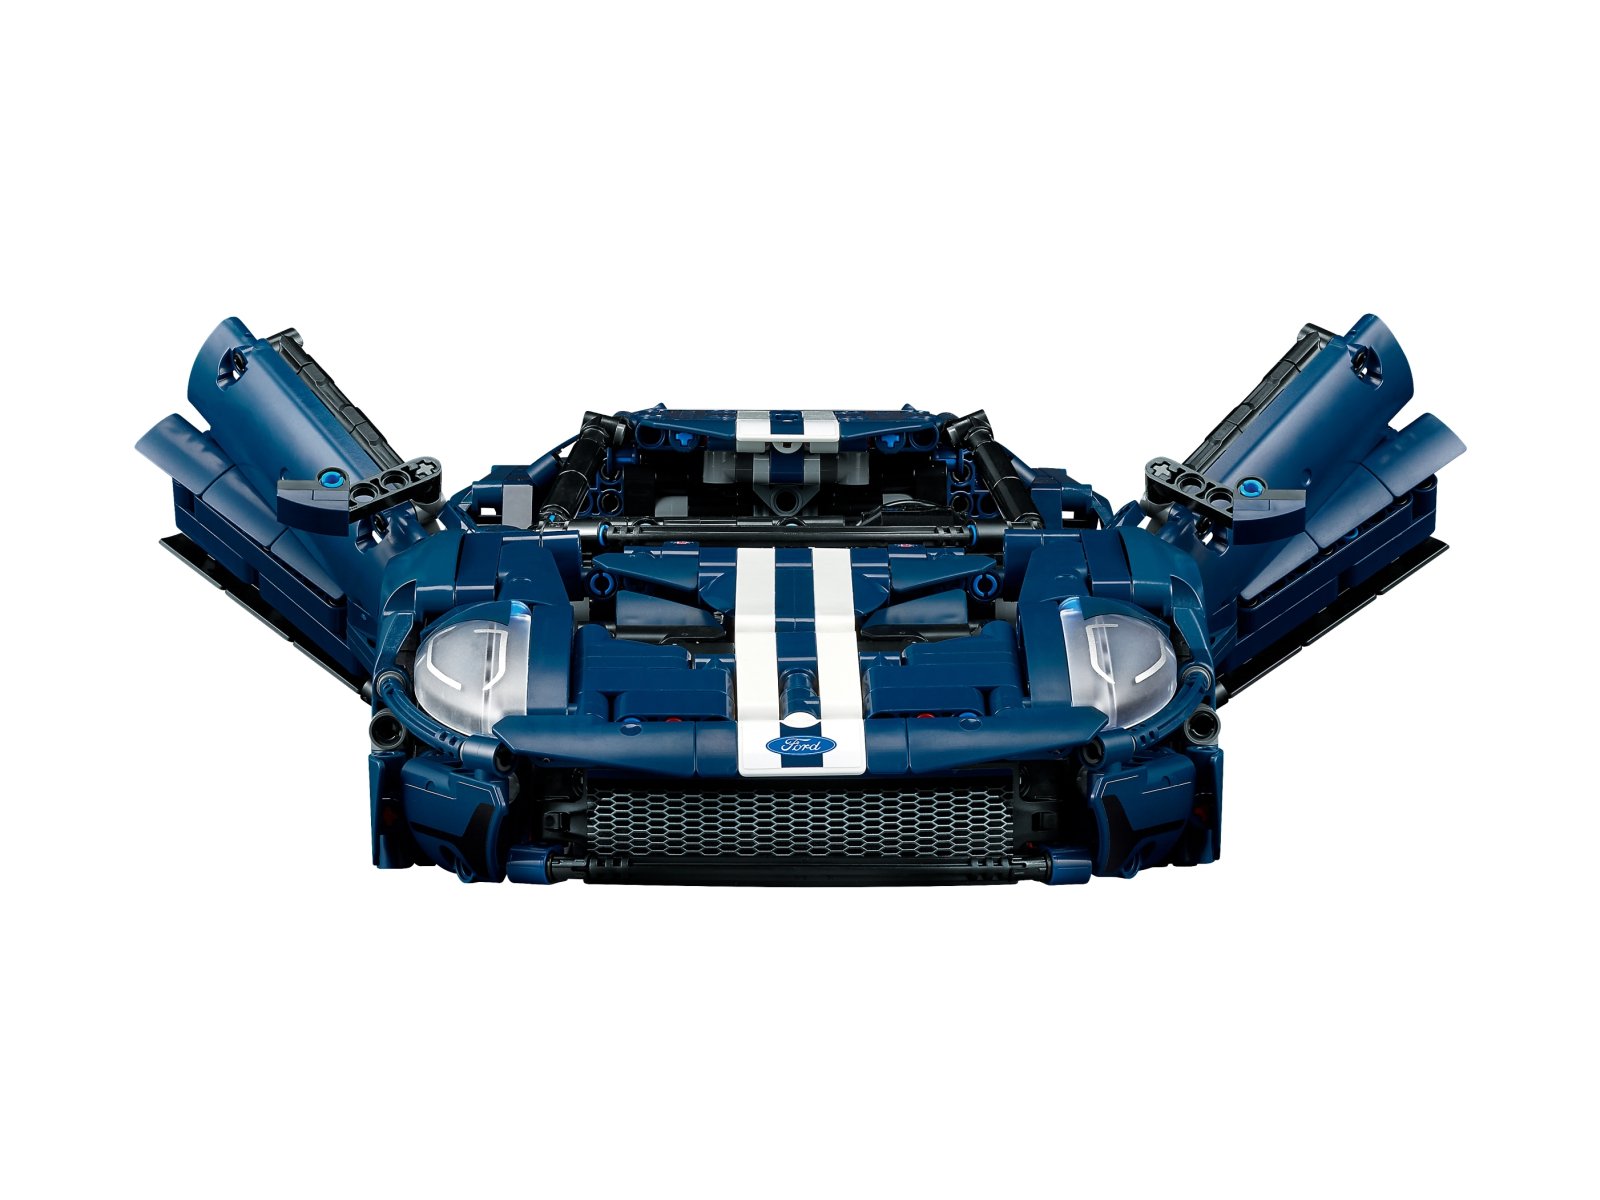 LEGO Technic 42154 Ford GT, wersja z 2022 roku